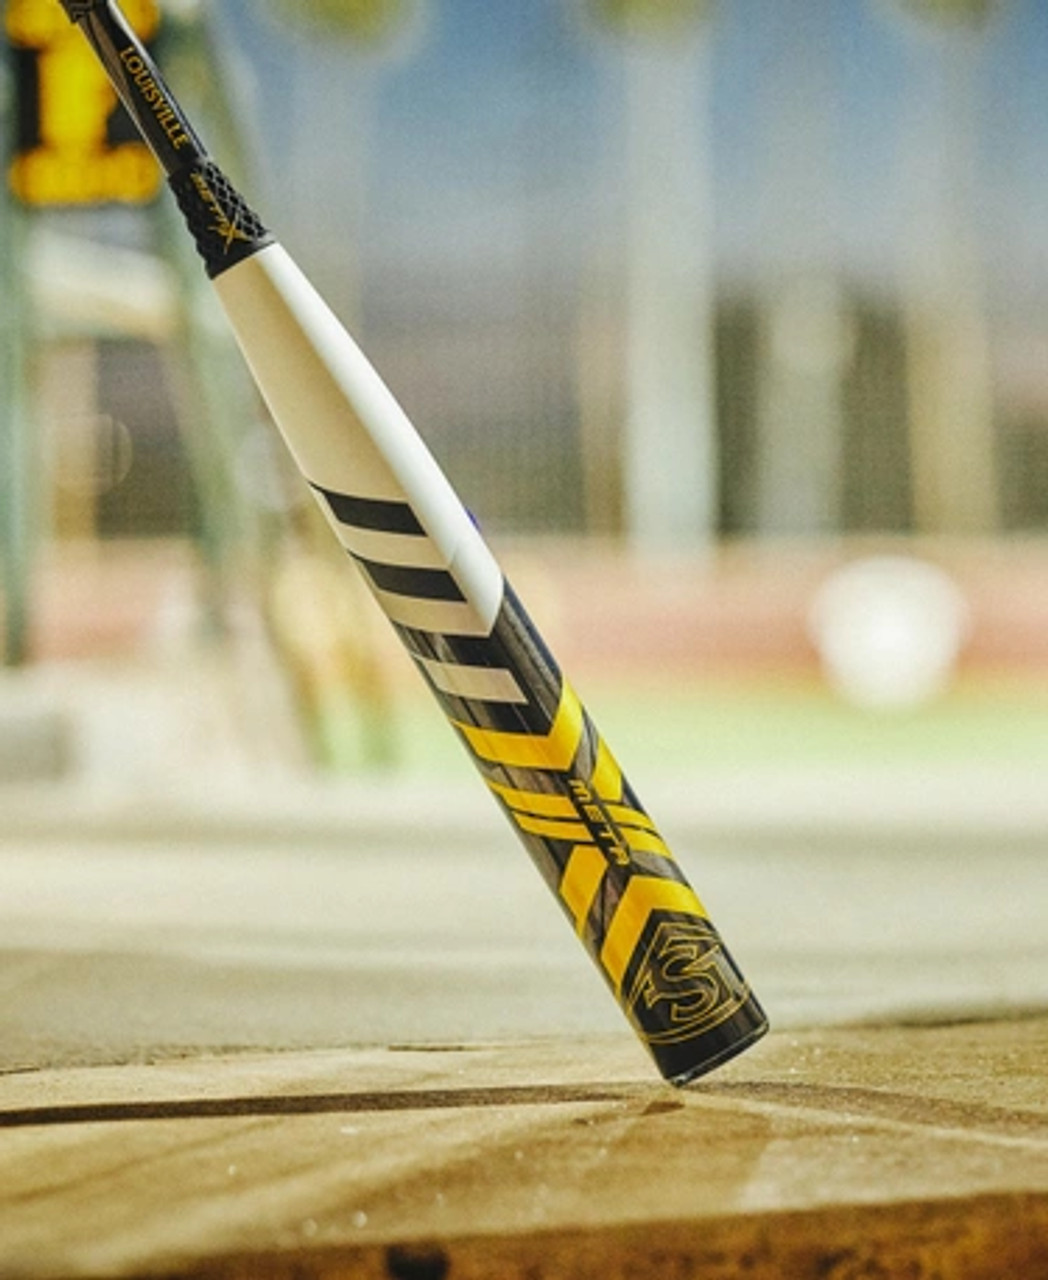 Louisville Slugger LXT -9 Bat WBL2544010, Better Baseball